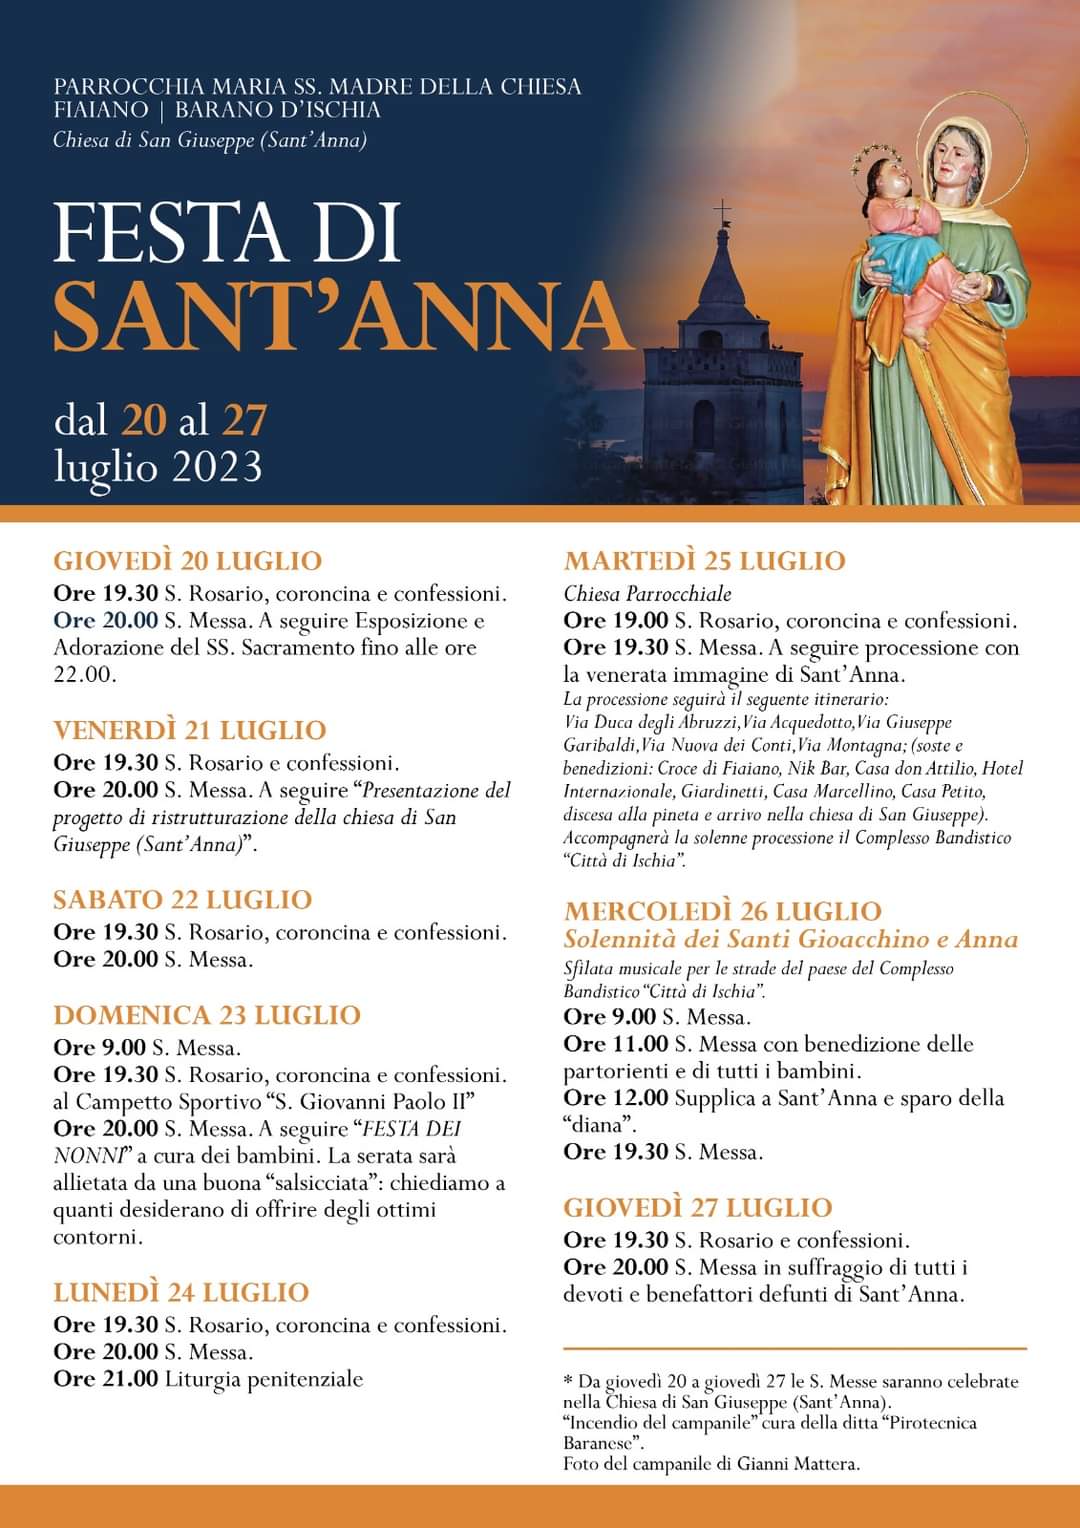 Festa di Sant'Anna: processione la venerata immagine di Sant’ Anna